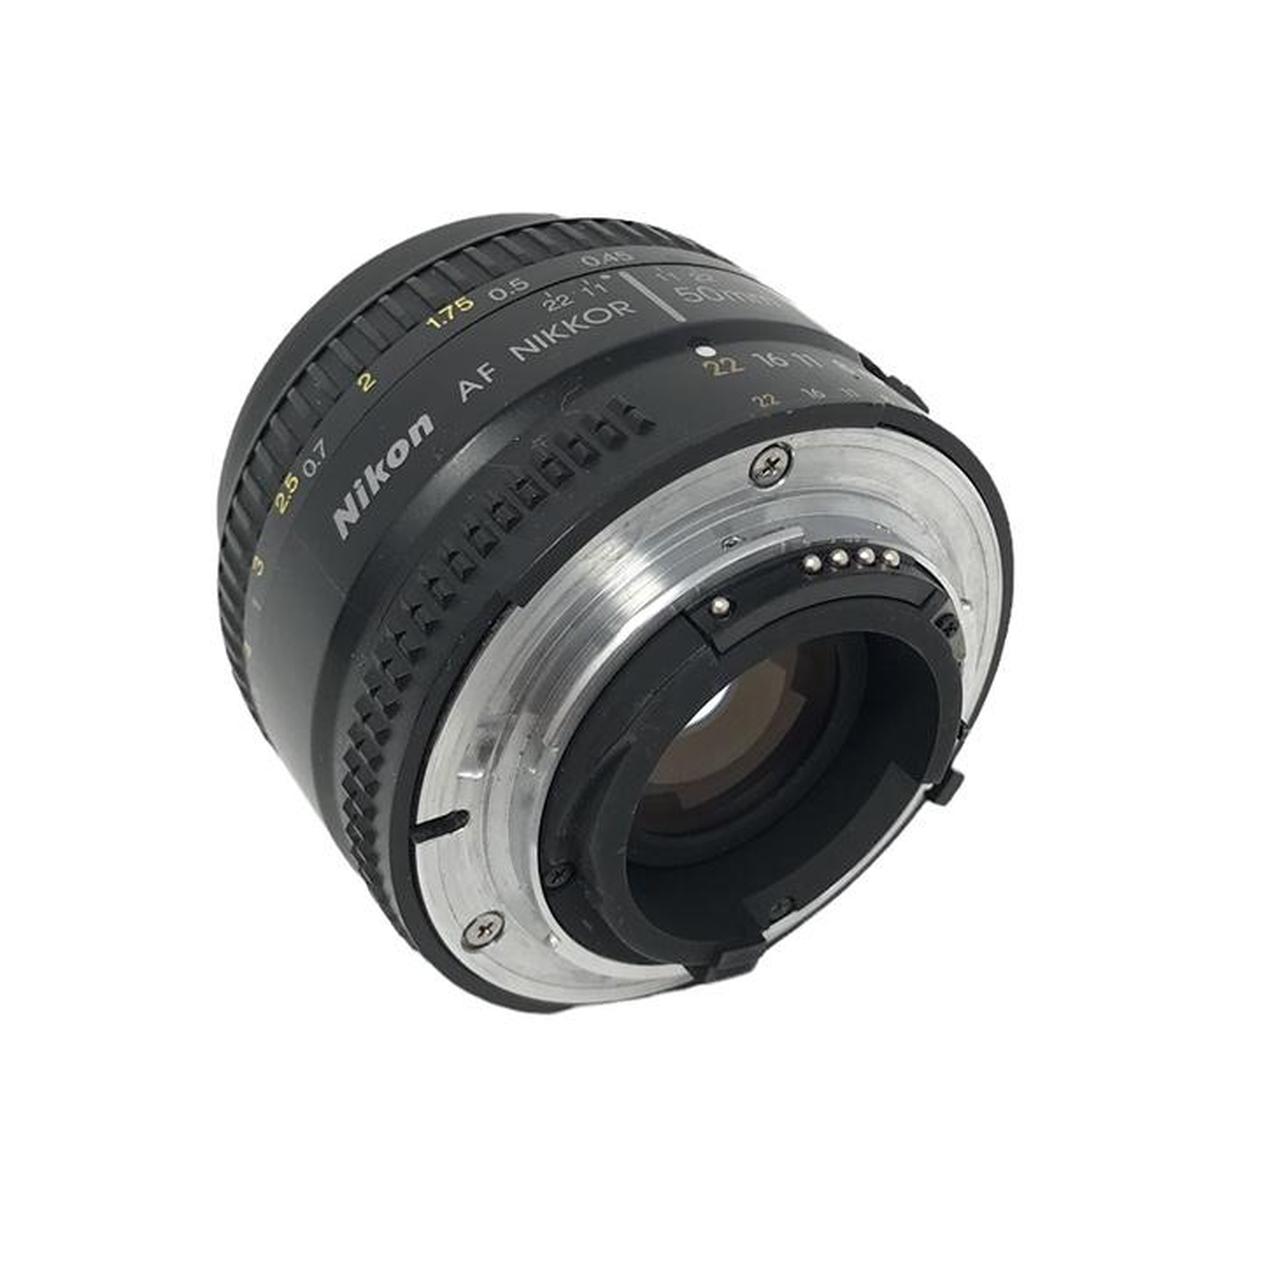 Product Image 3 - Nikon Af Nikkor 50mm 1:1.8